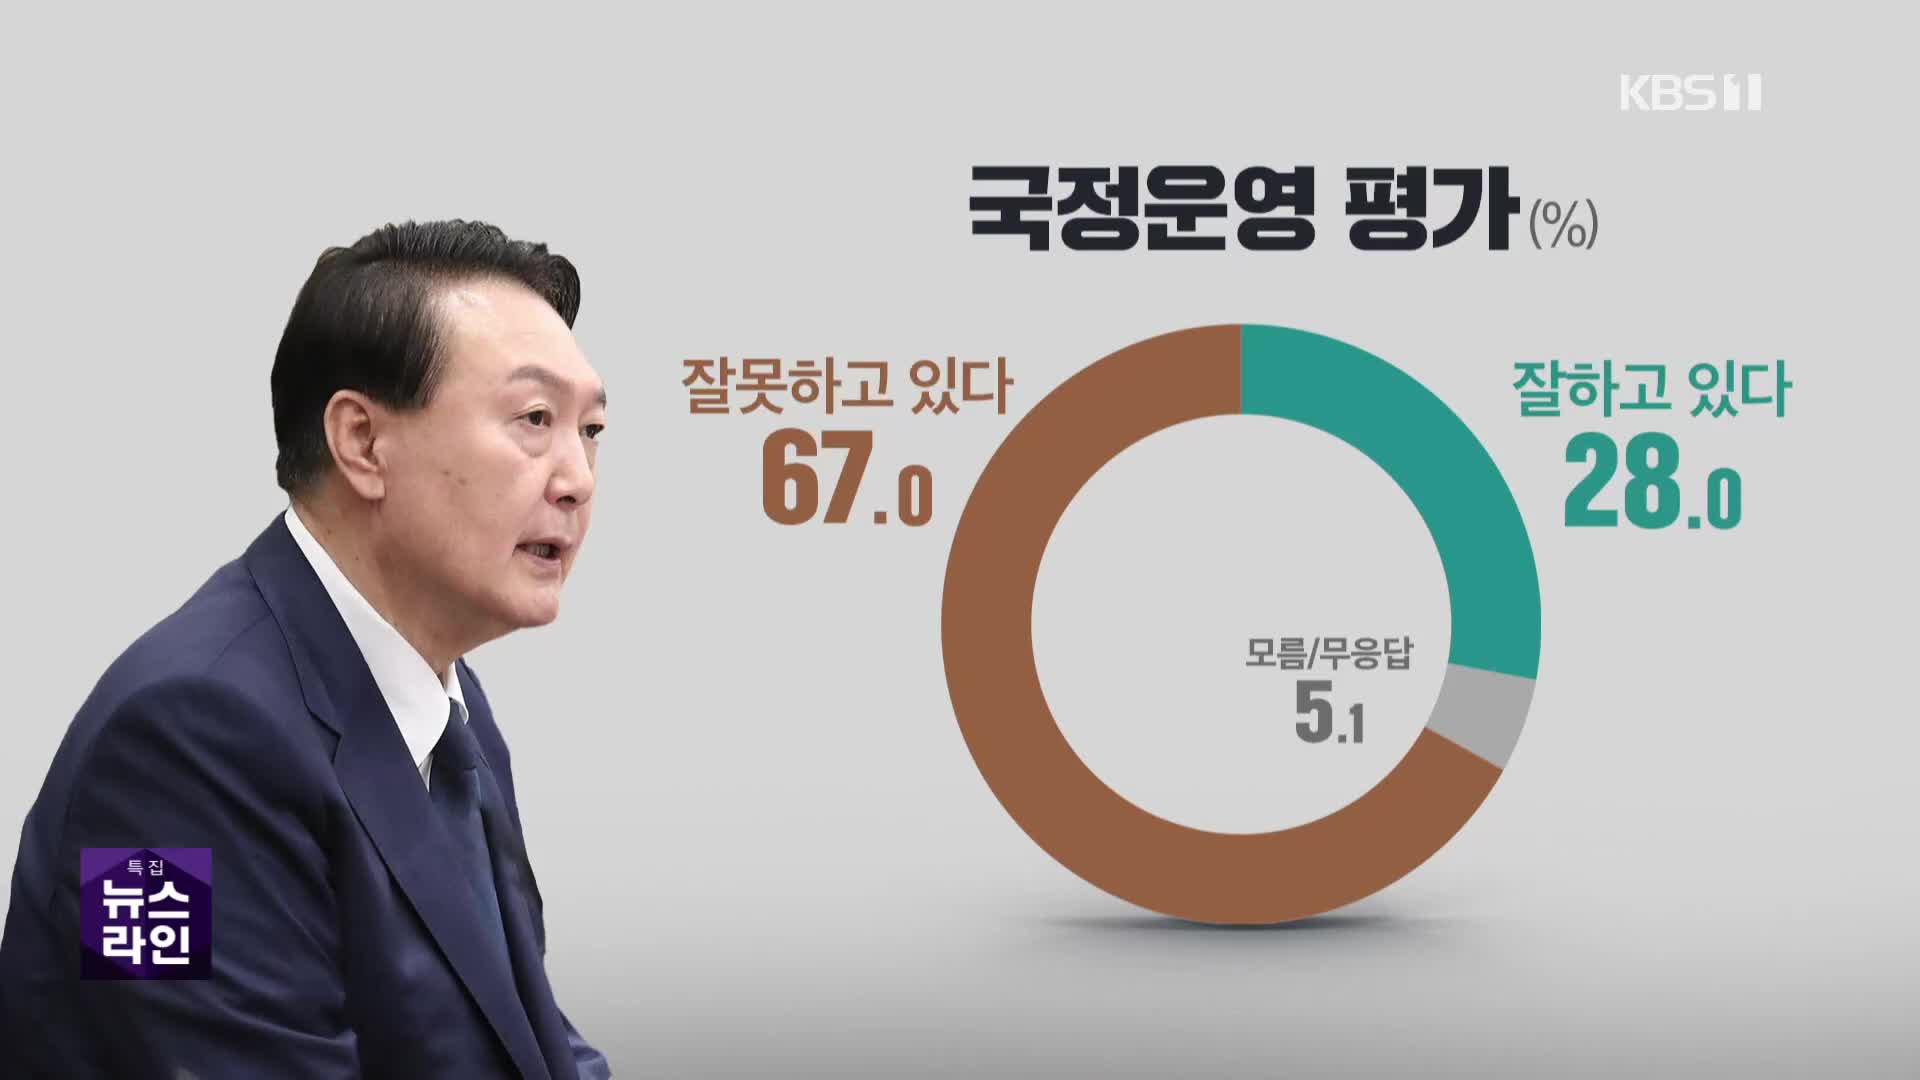 윤 대통령 국정 평가 “못 한다” 67%·“잘 한다” 28%